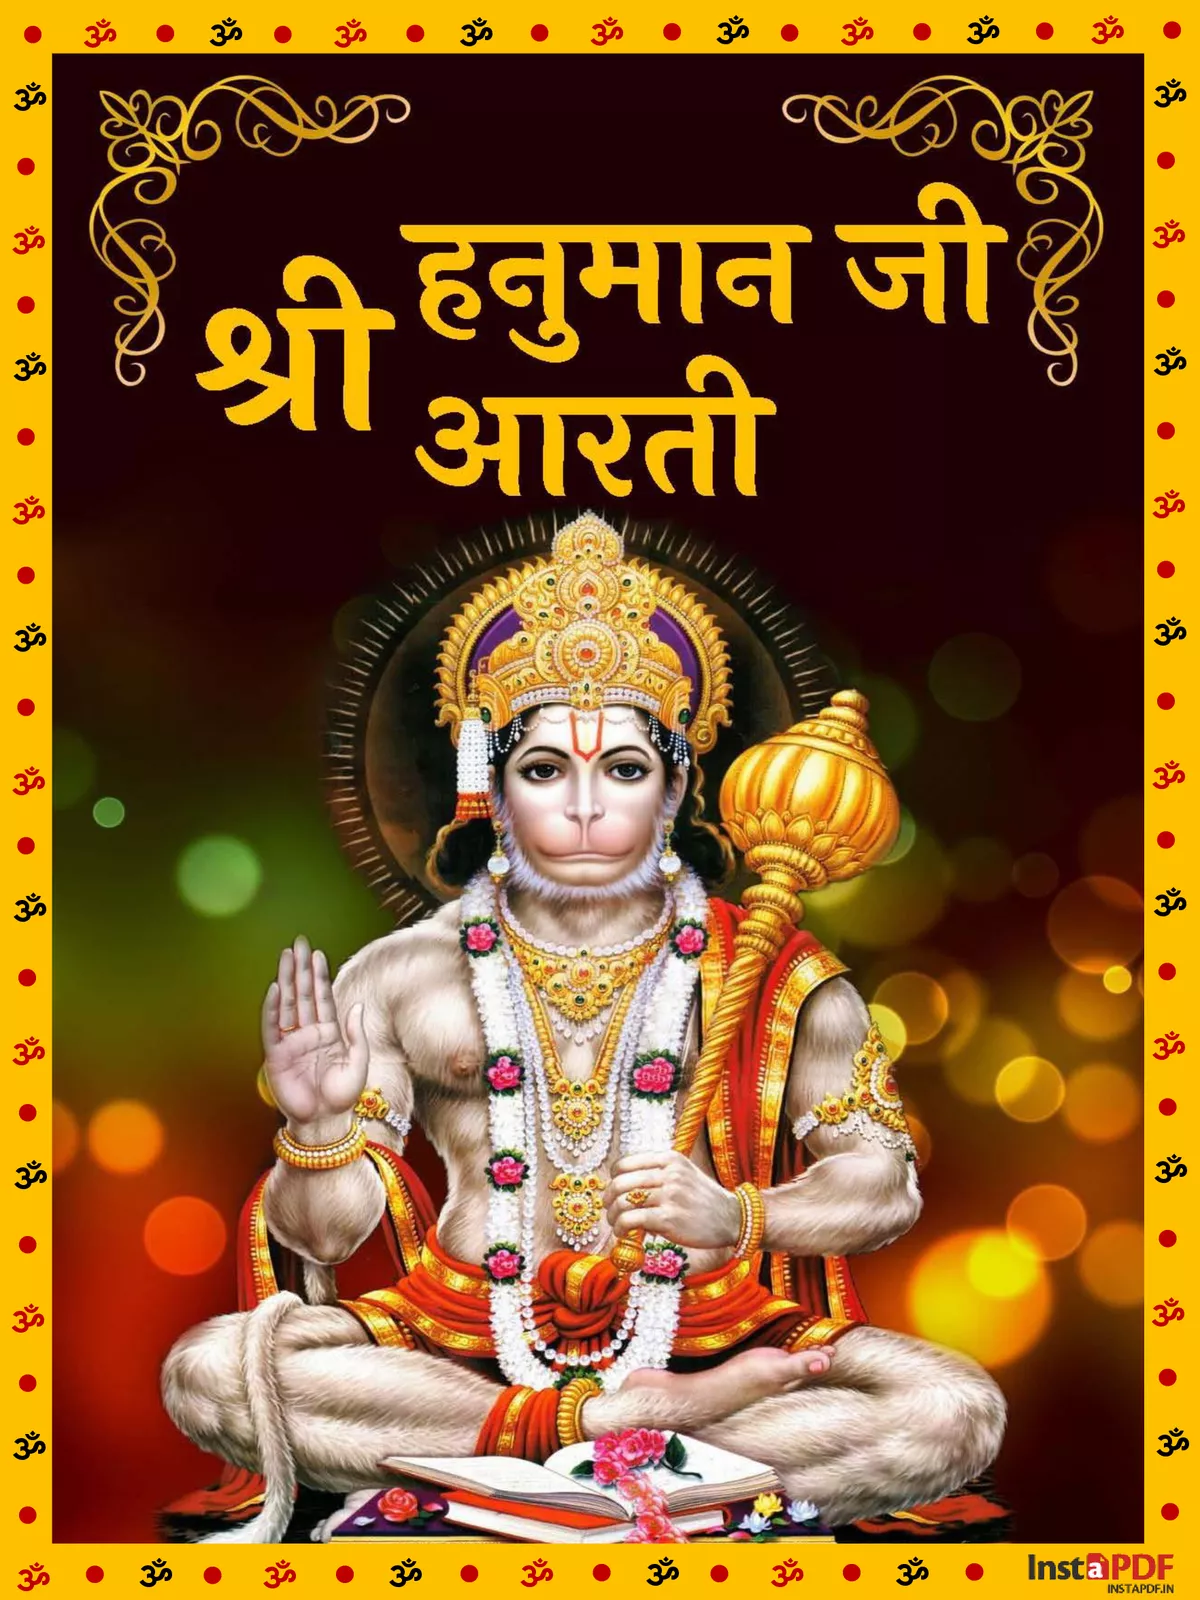 हनुमान आरती (Hanuman Aarti)